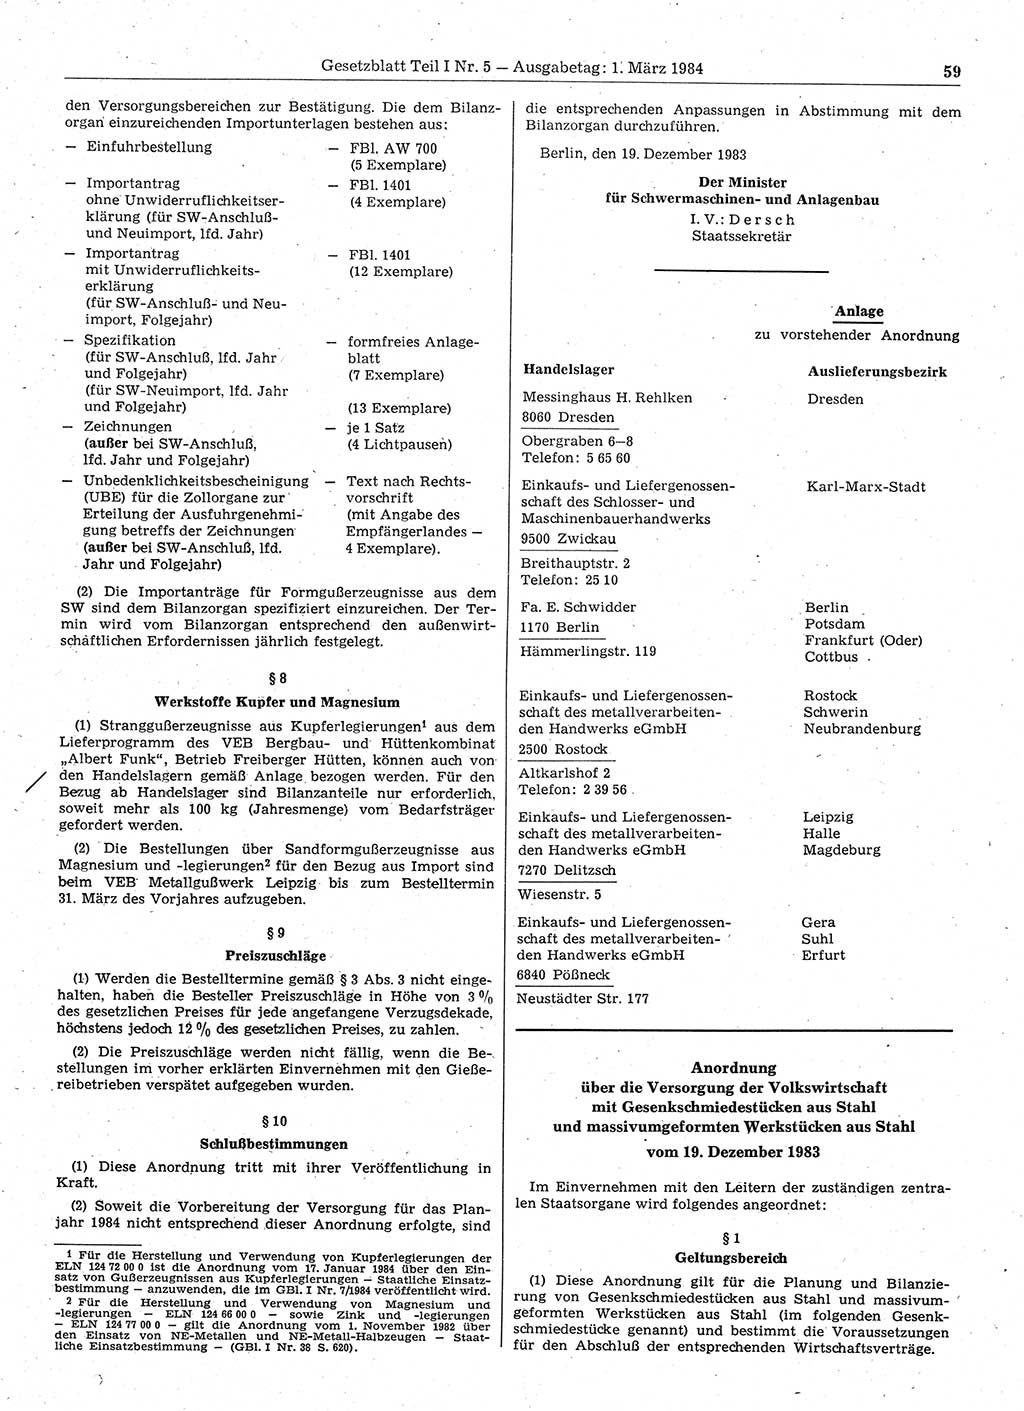 Gesetzblatt (GBl.) der Deutschen Demokratischen Republik (DDR) Teil Ⅰ 1984, Seite 59 (GBl. DDR Ⅰ 1984, S. 59)